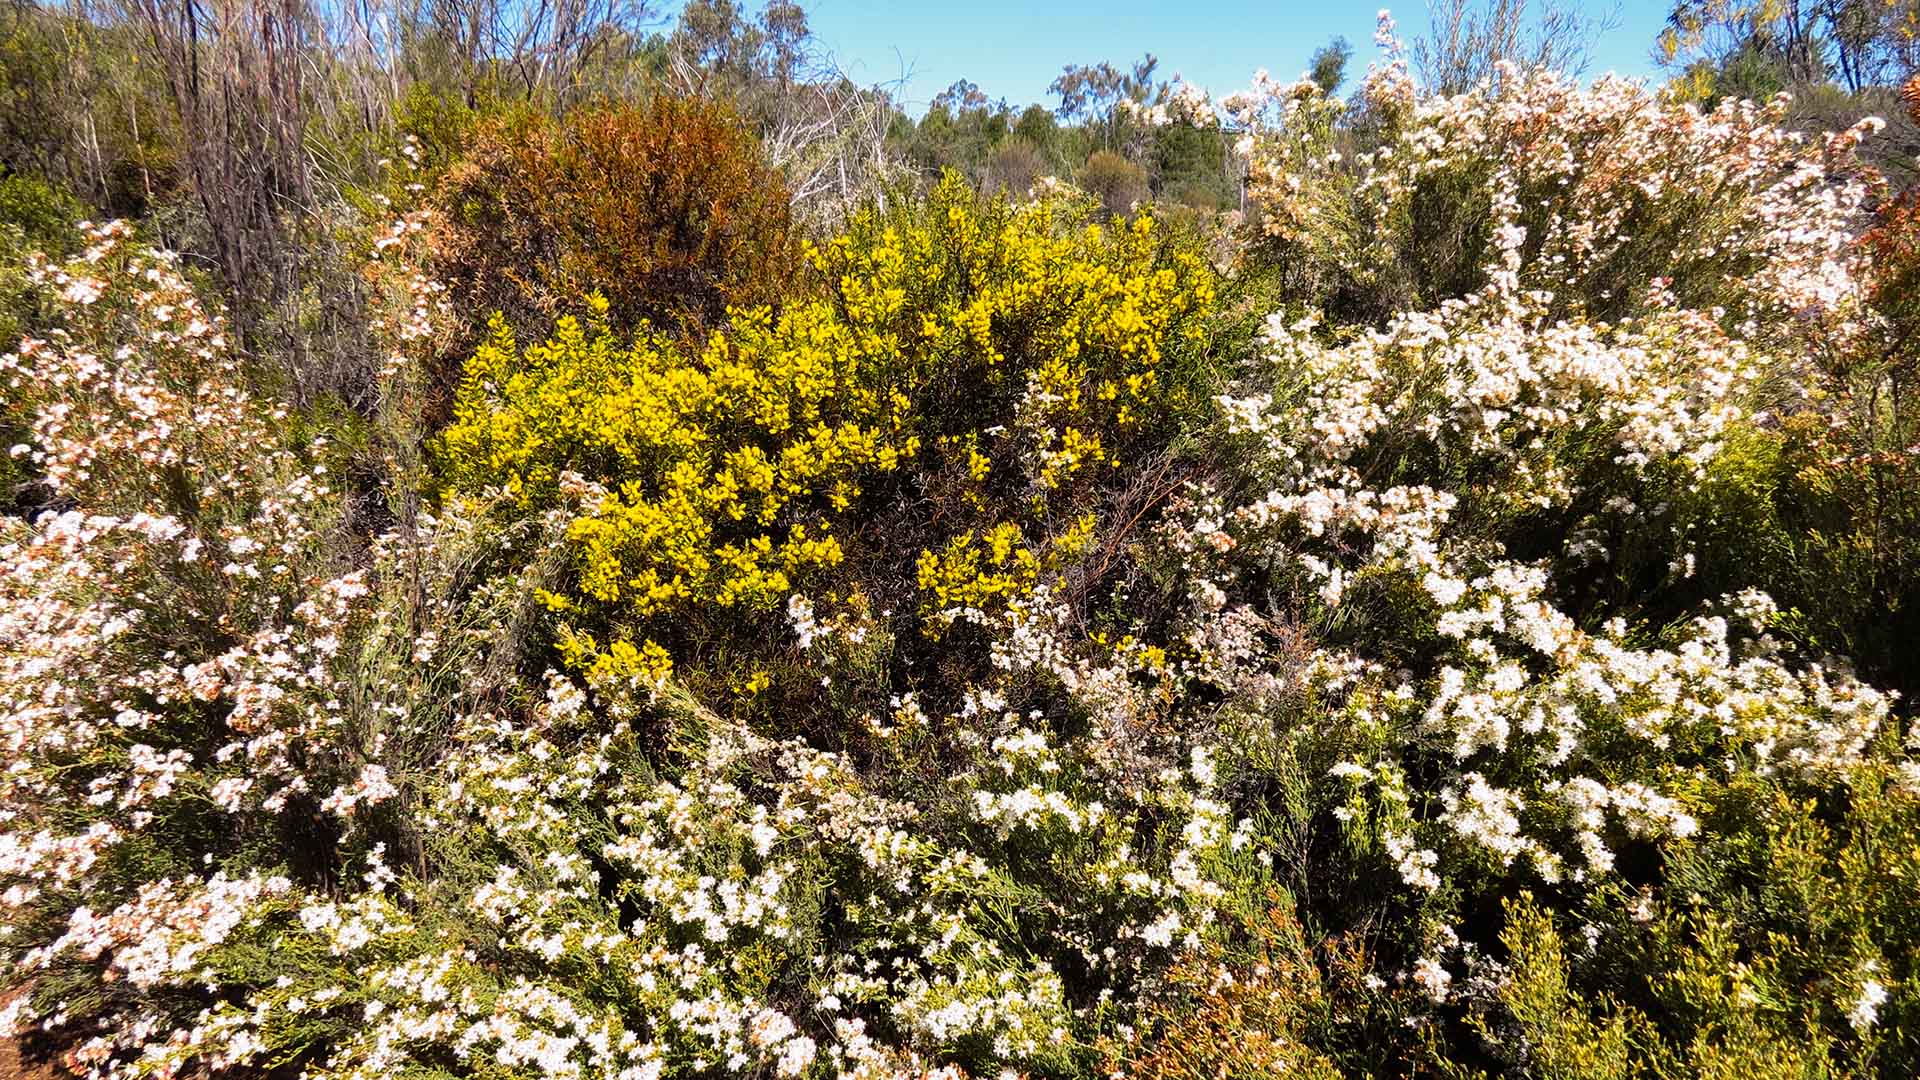 Field of Australian native wildflowers